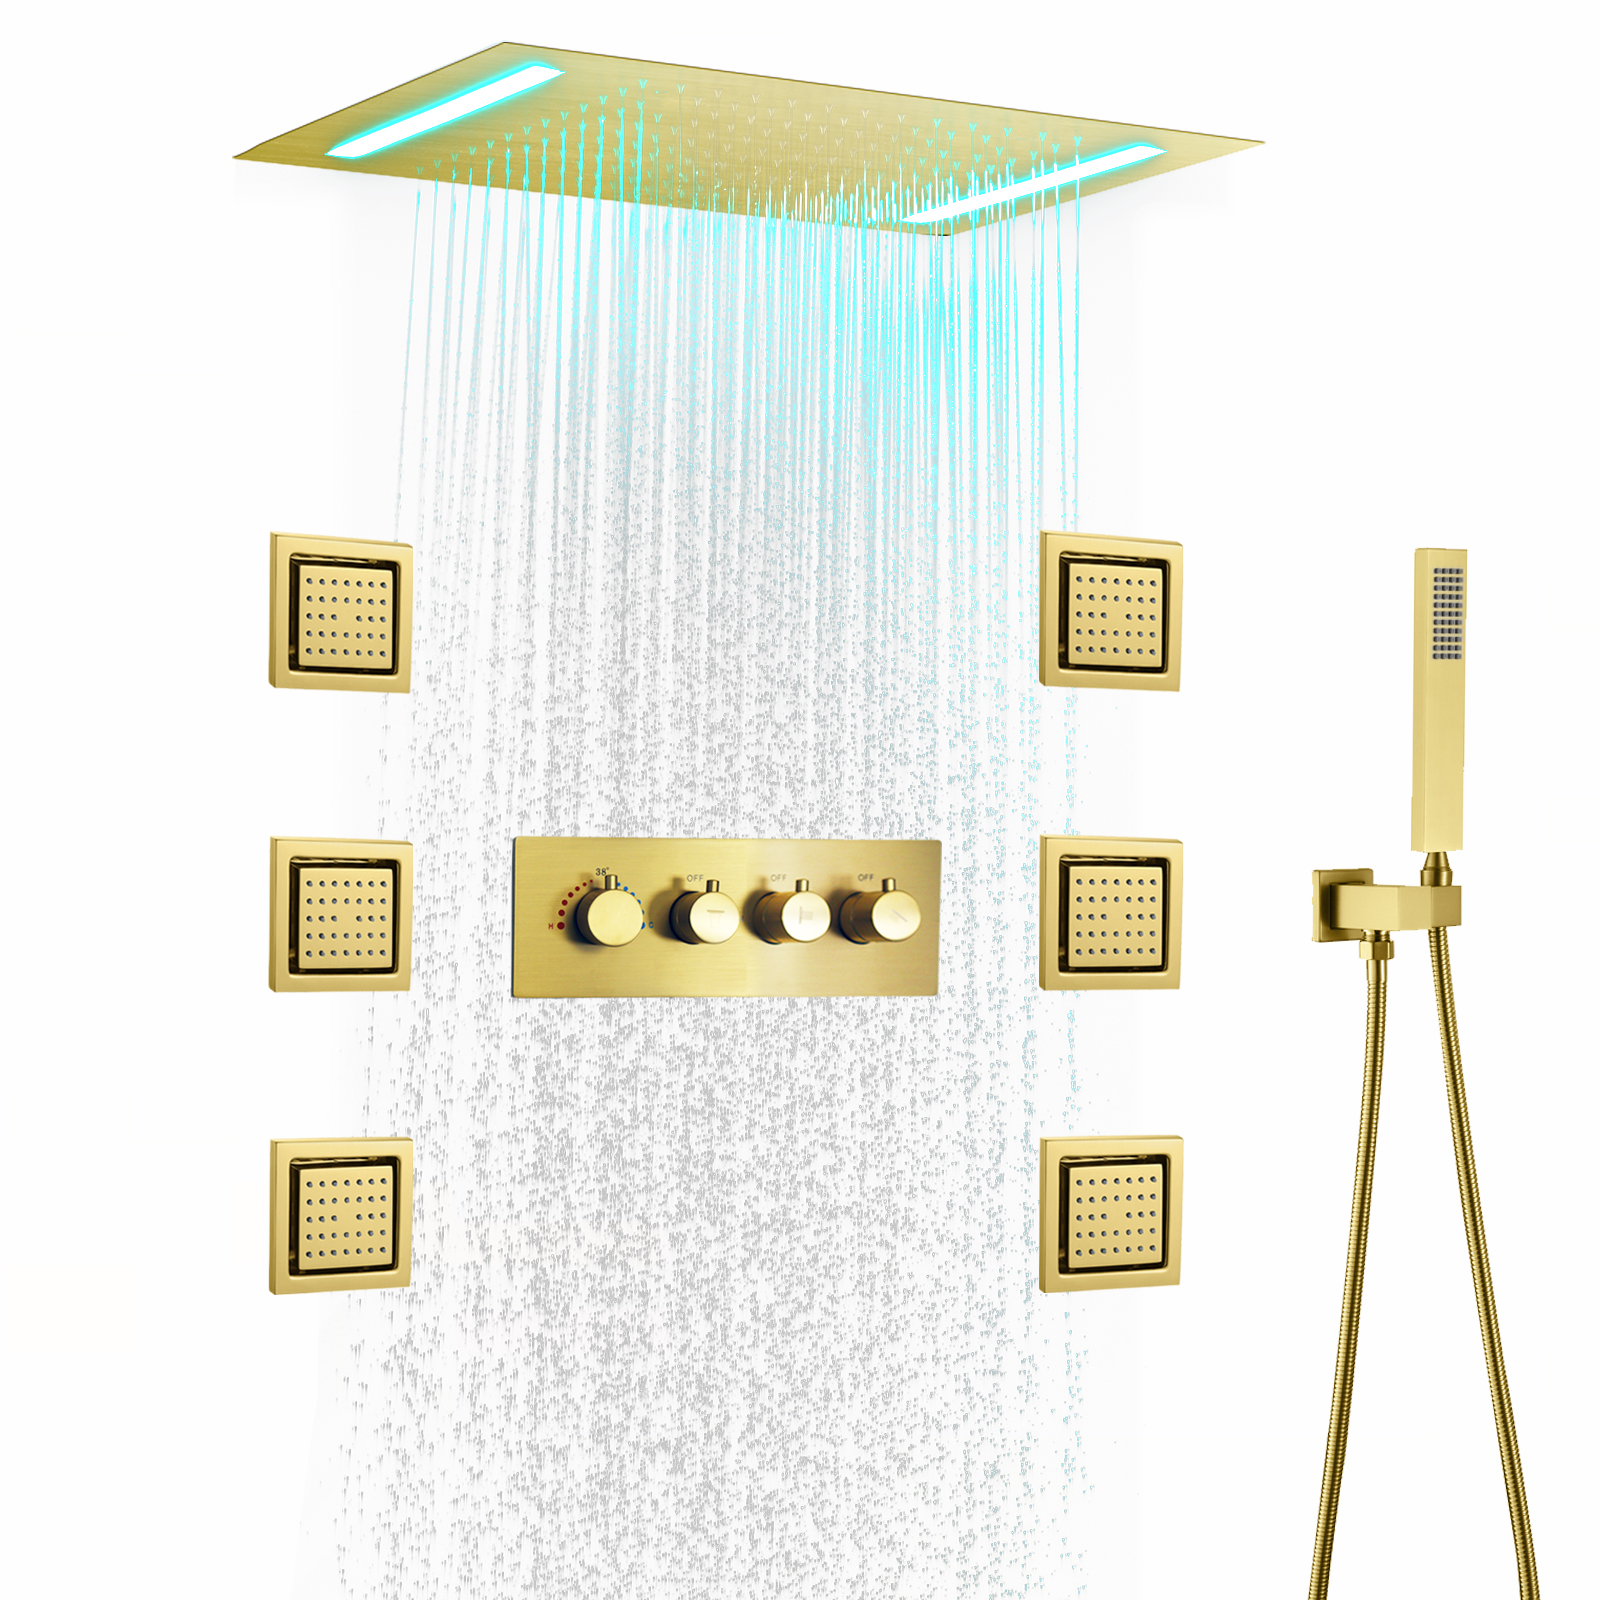 Banheira do banheiro chuveiro led grande bronze bronze fixado na parede chuveiro de chuva escondido temperatura híbrido misturado misturador conjunto